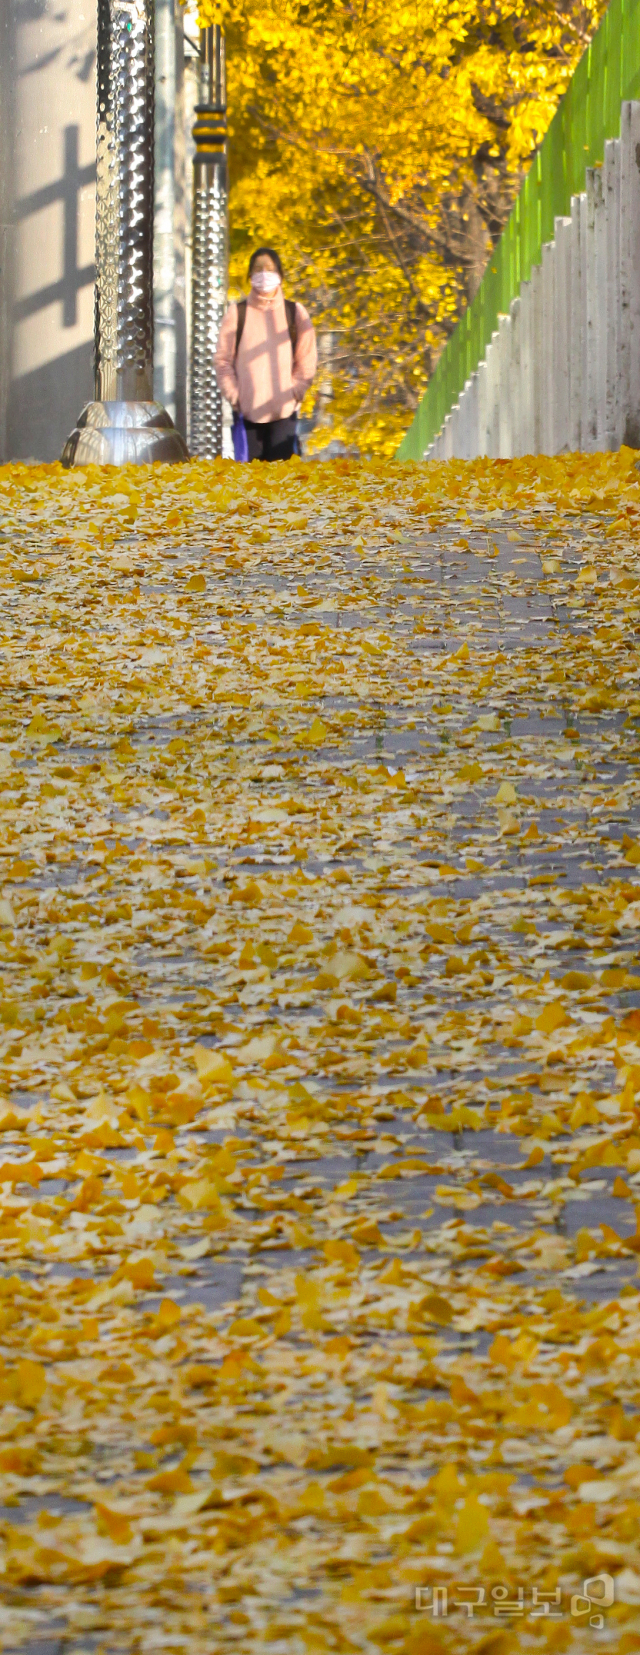 ▲ 16일 오전 대구여고 담벼락 너머로 살포시 내려앉은 노란 은행잎들이 늦가을의 정취를 물씬 풍기고 있다.